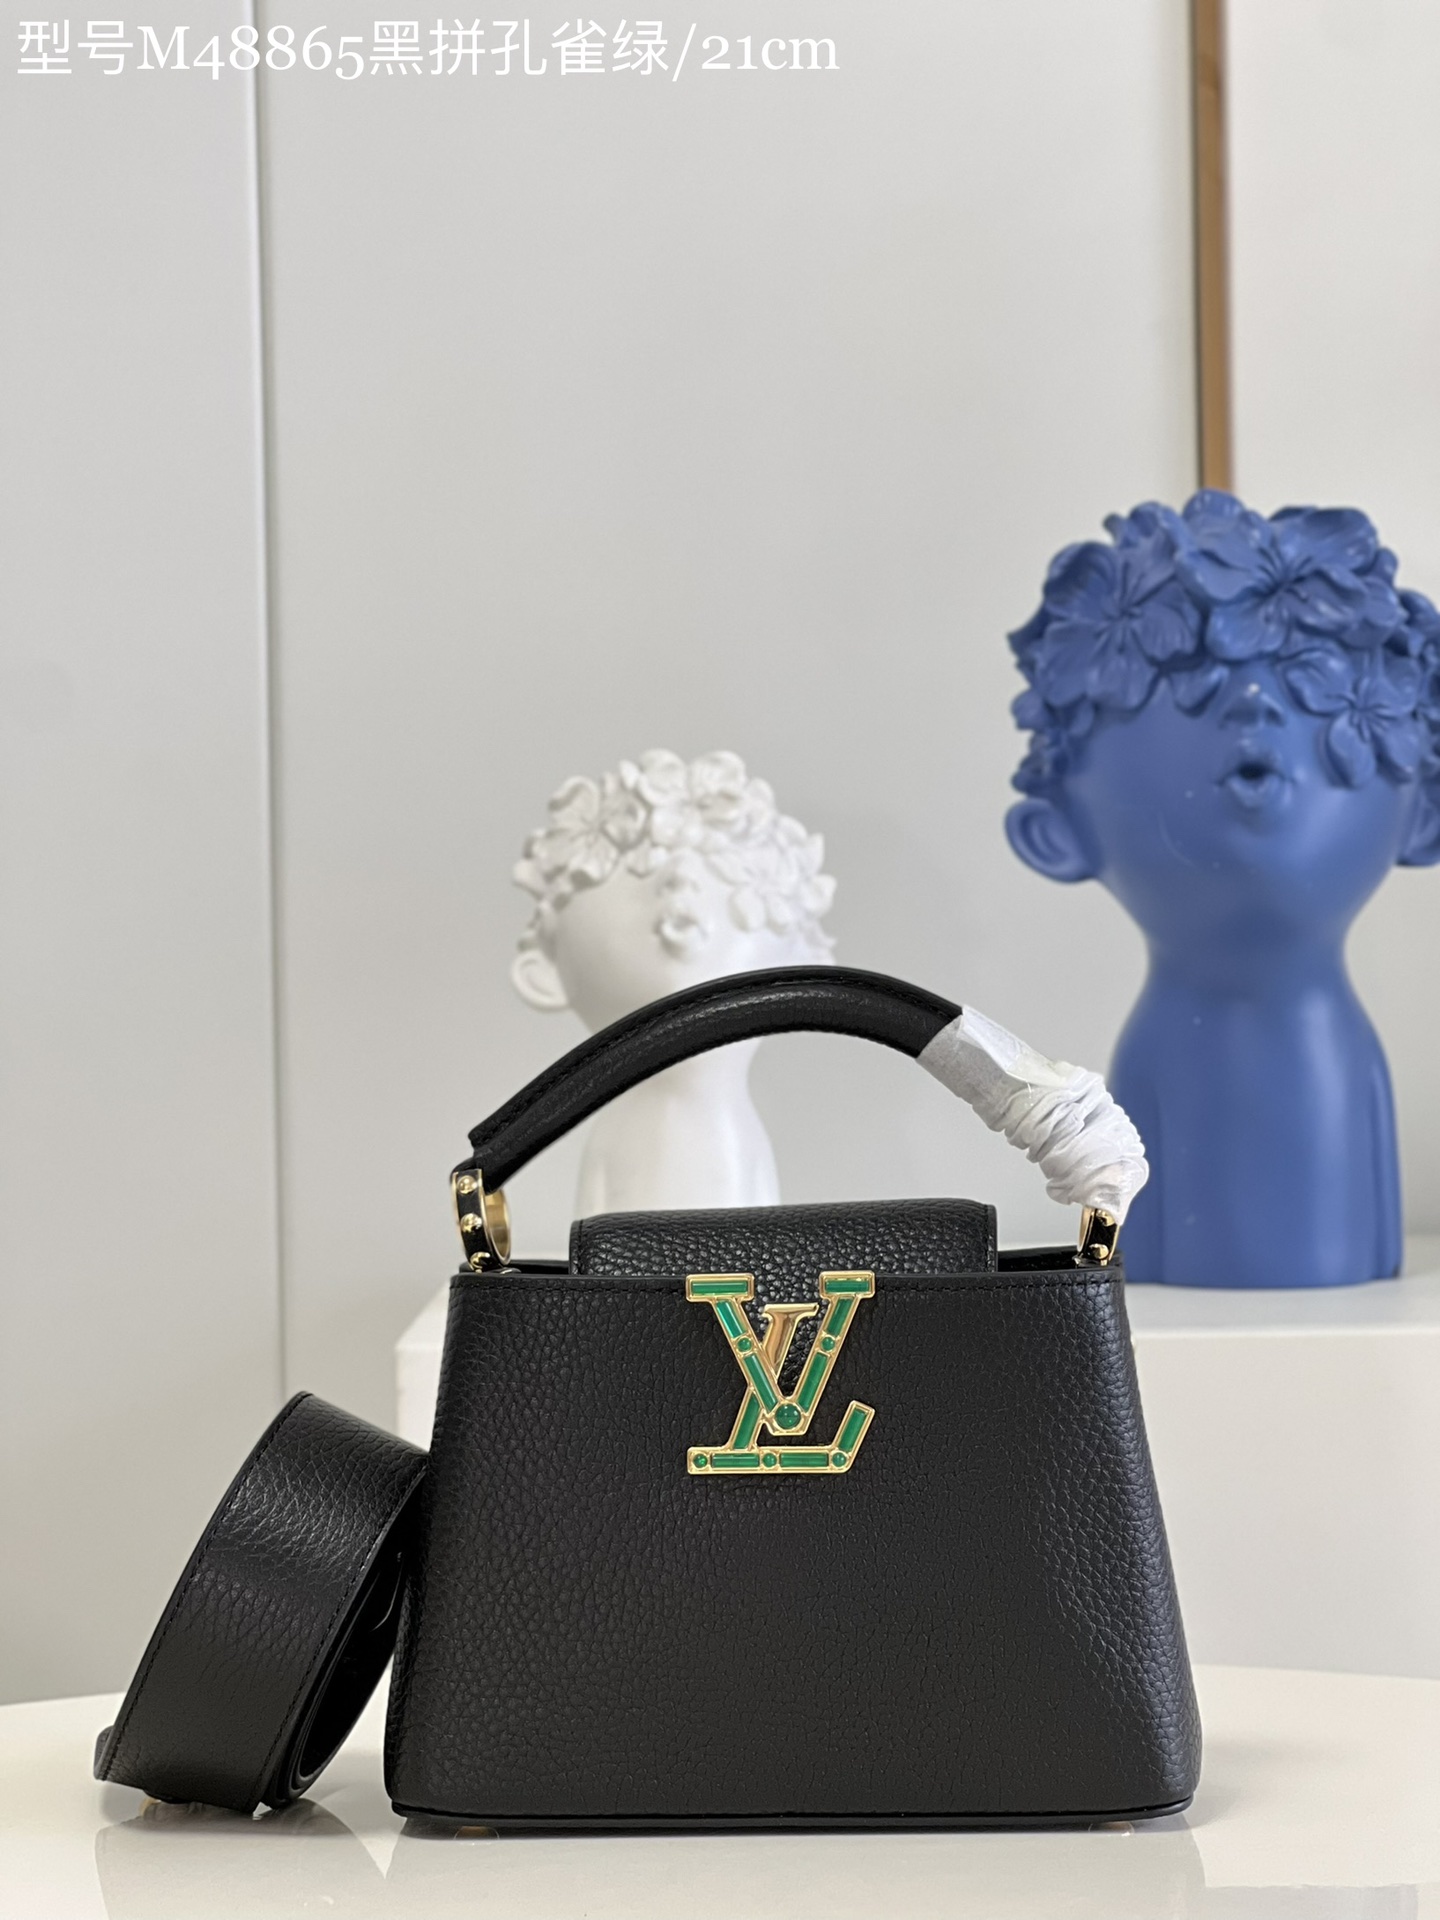 Louis Vuitton LV Capucines Bags Handbags Black Green Calfskin Cowhide Mini M48865